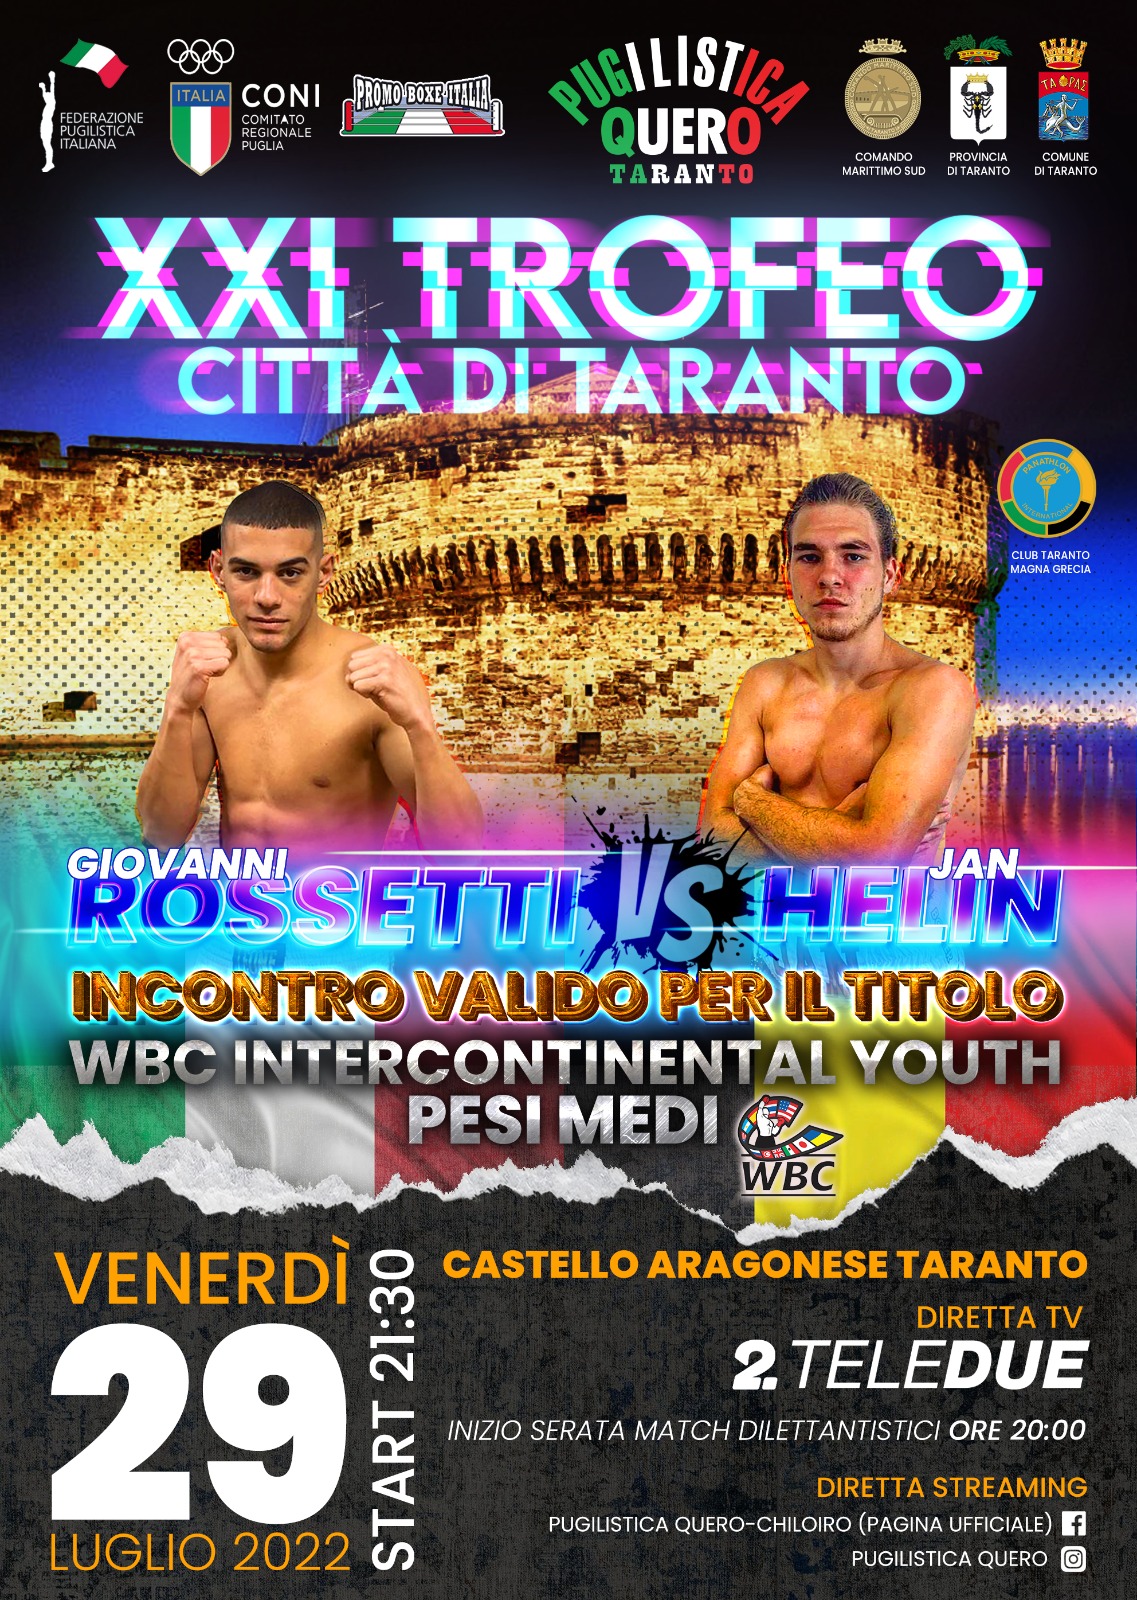 Il 29 luglio la XXI Ed. Trofeo Città di Taranto - Main event Rossetti vs Helin per il WBC Int. Youth Pesi Medi